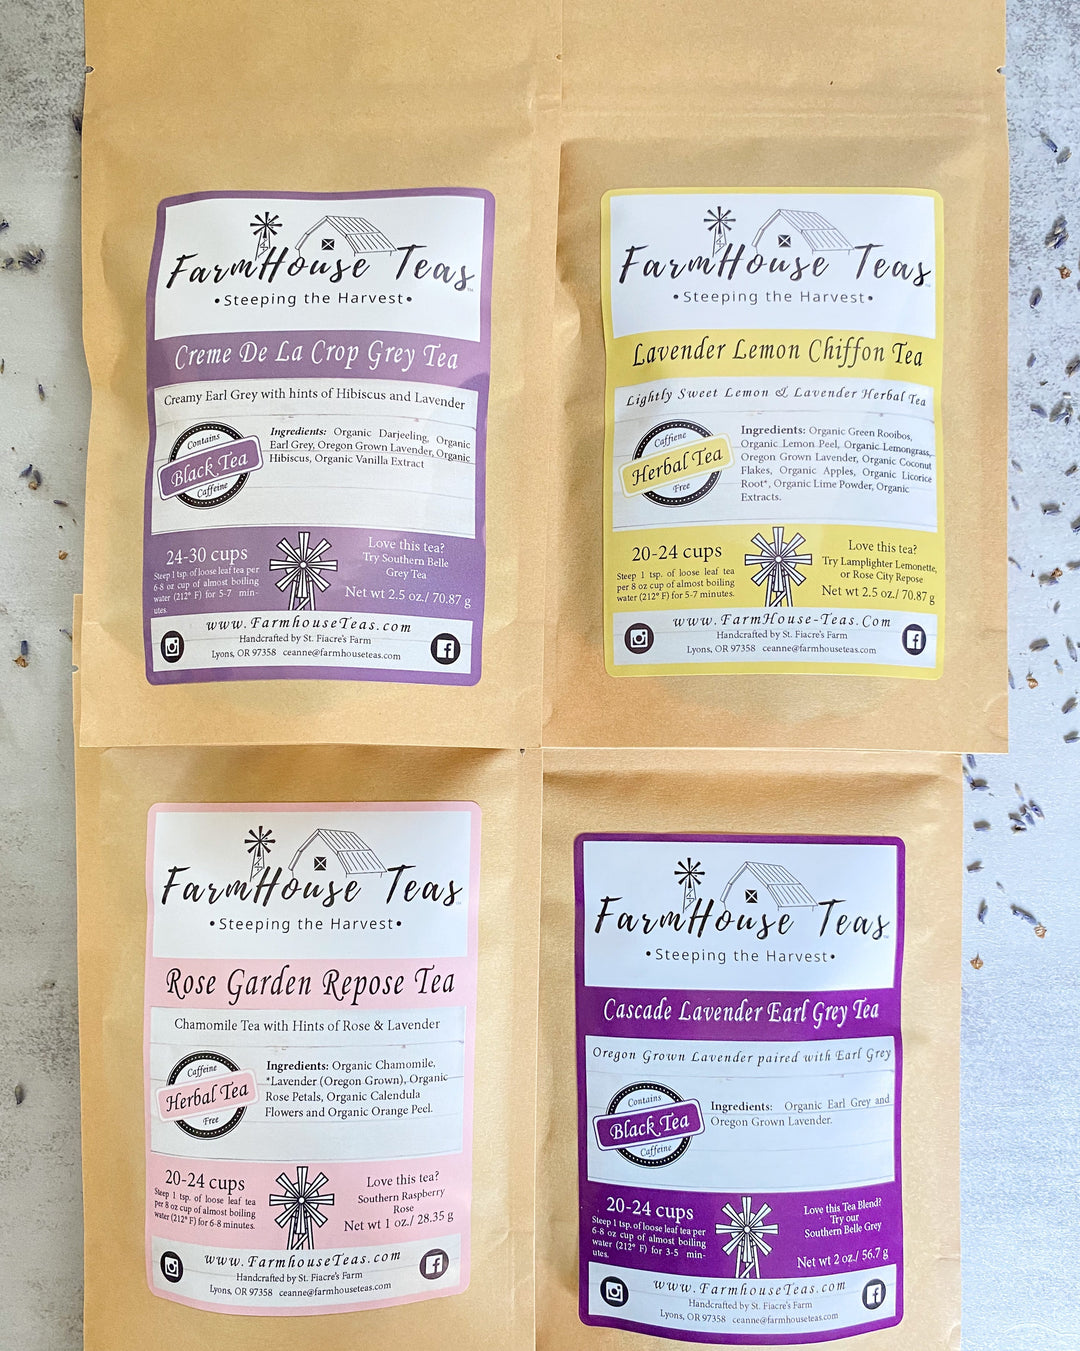 Lovely Lavender Box | Grow, Create & Sip - Farmhouse Teas